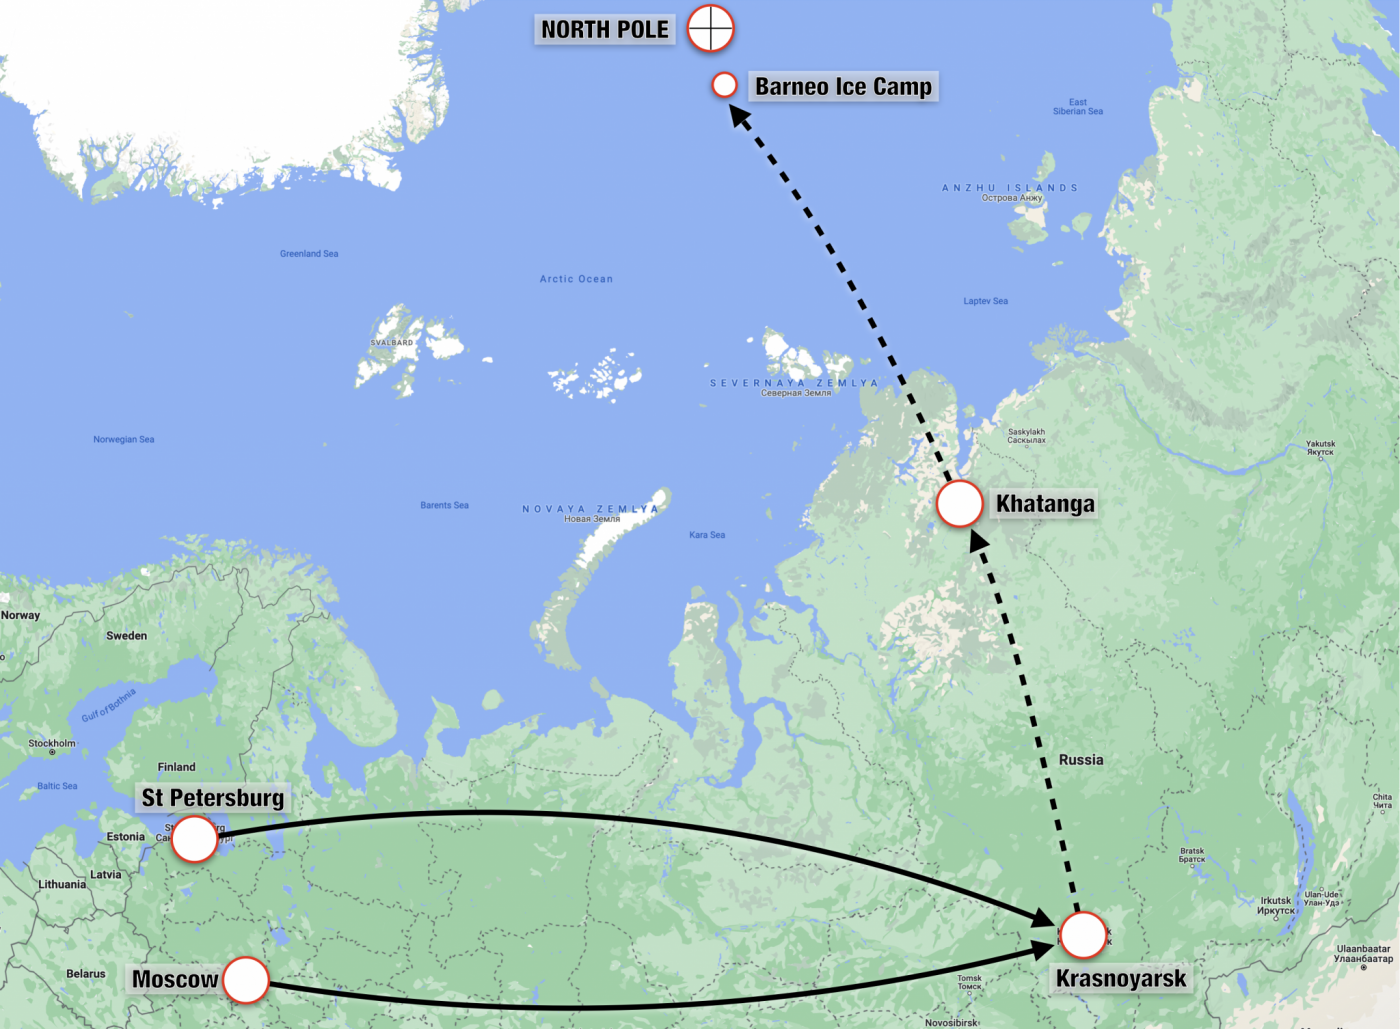 North Pole via Russia